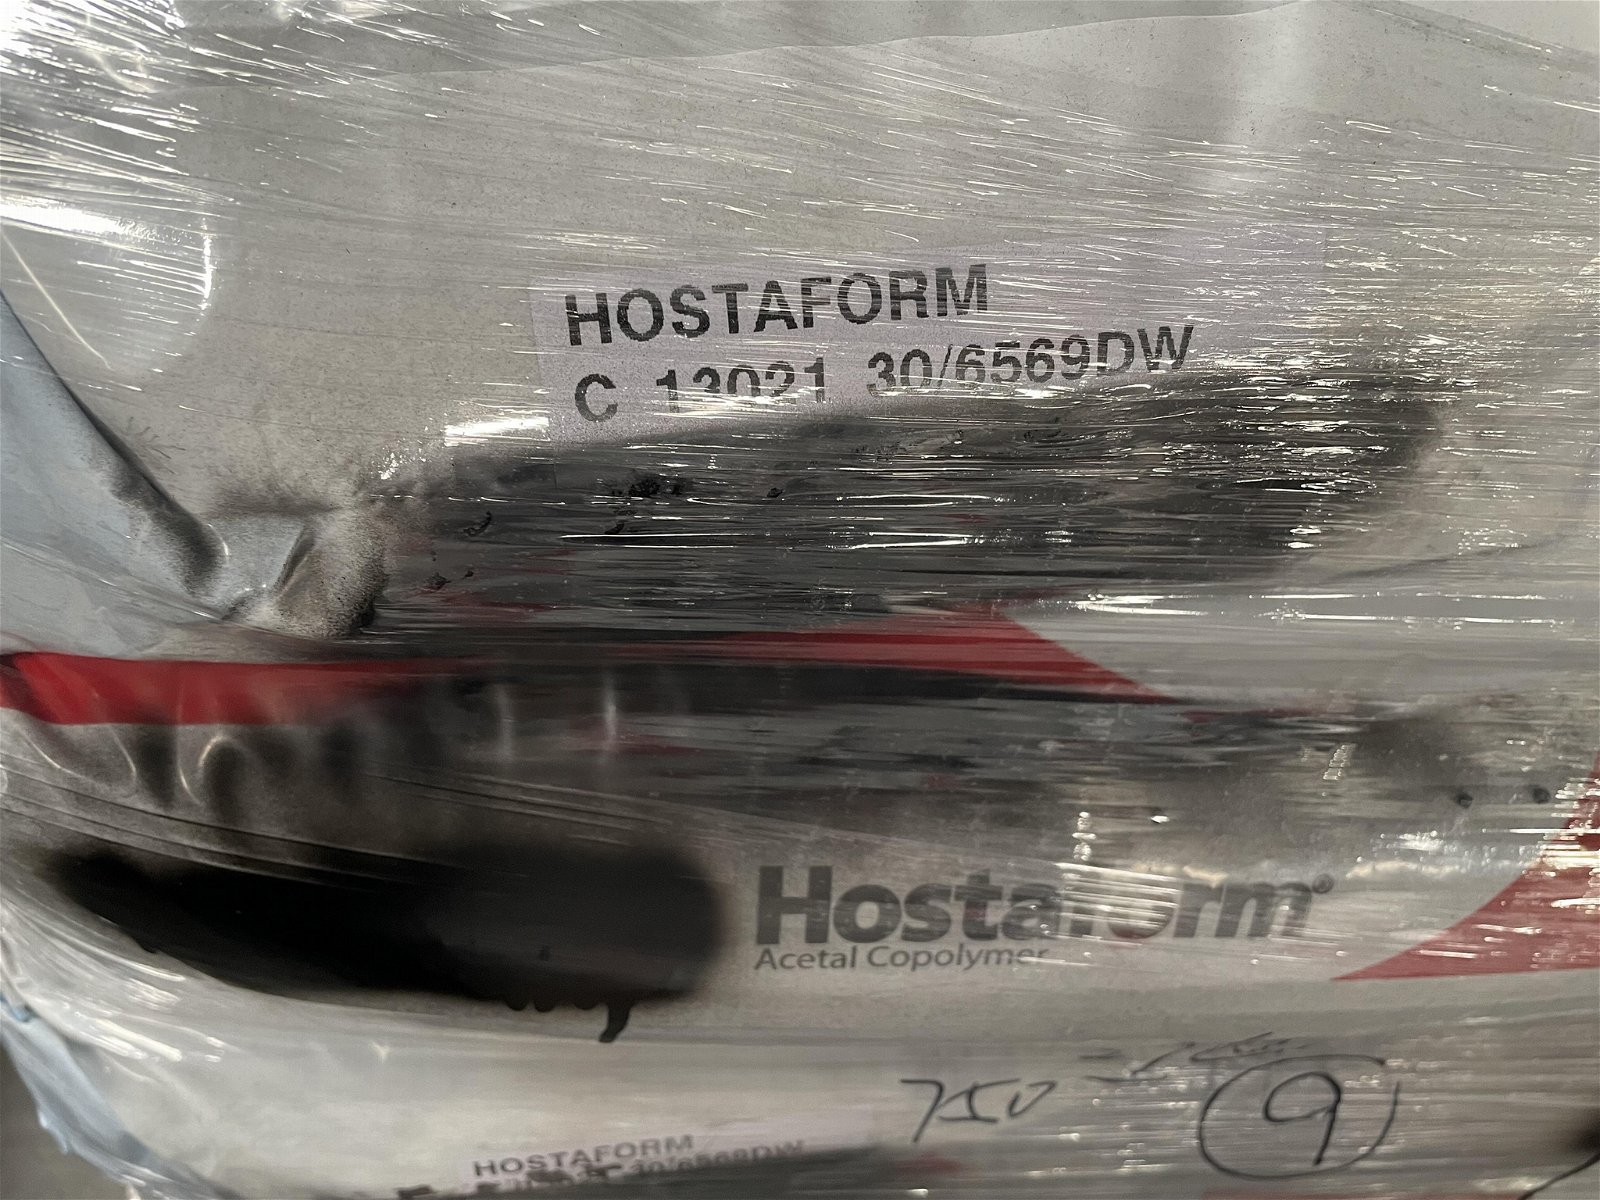 HOSTAFORM C13021 30/6569 DW